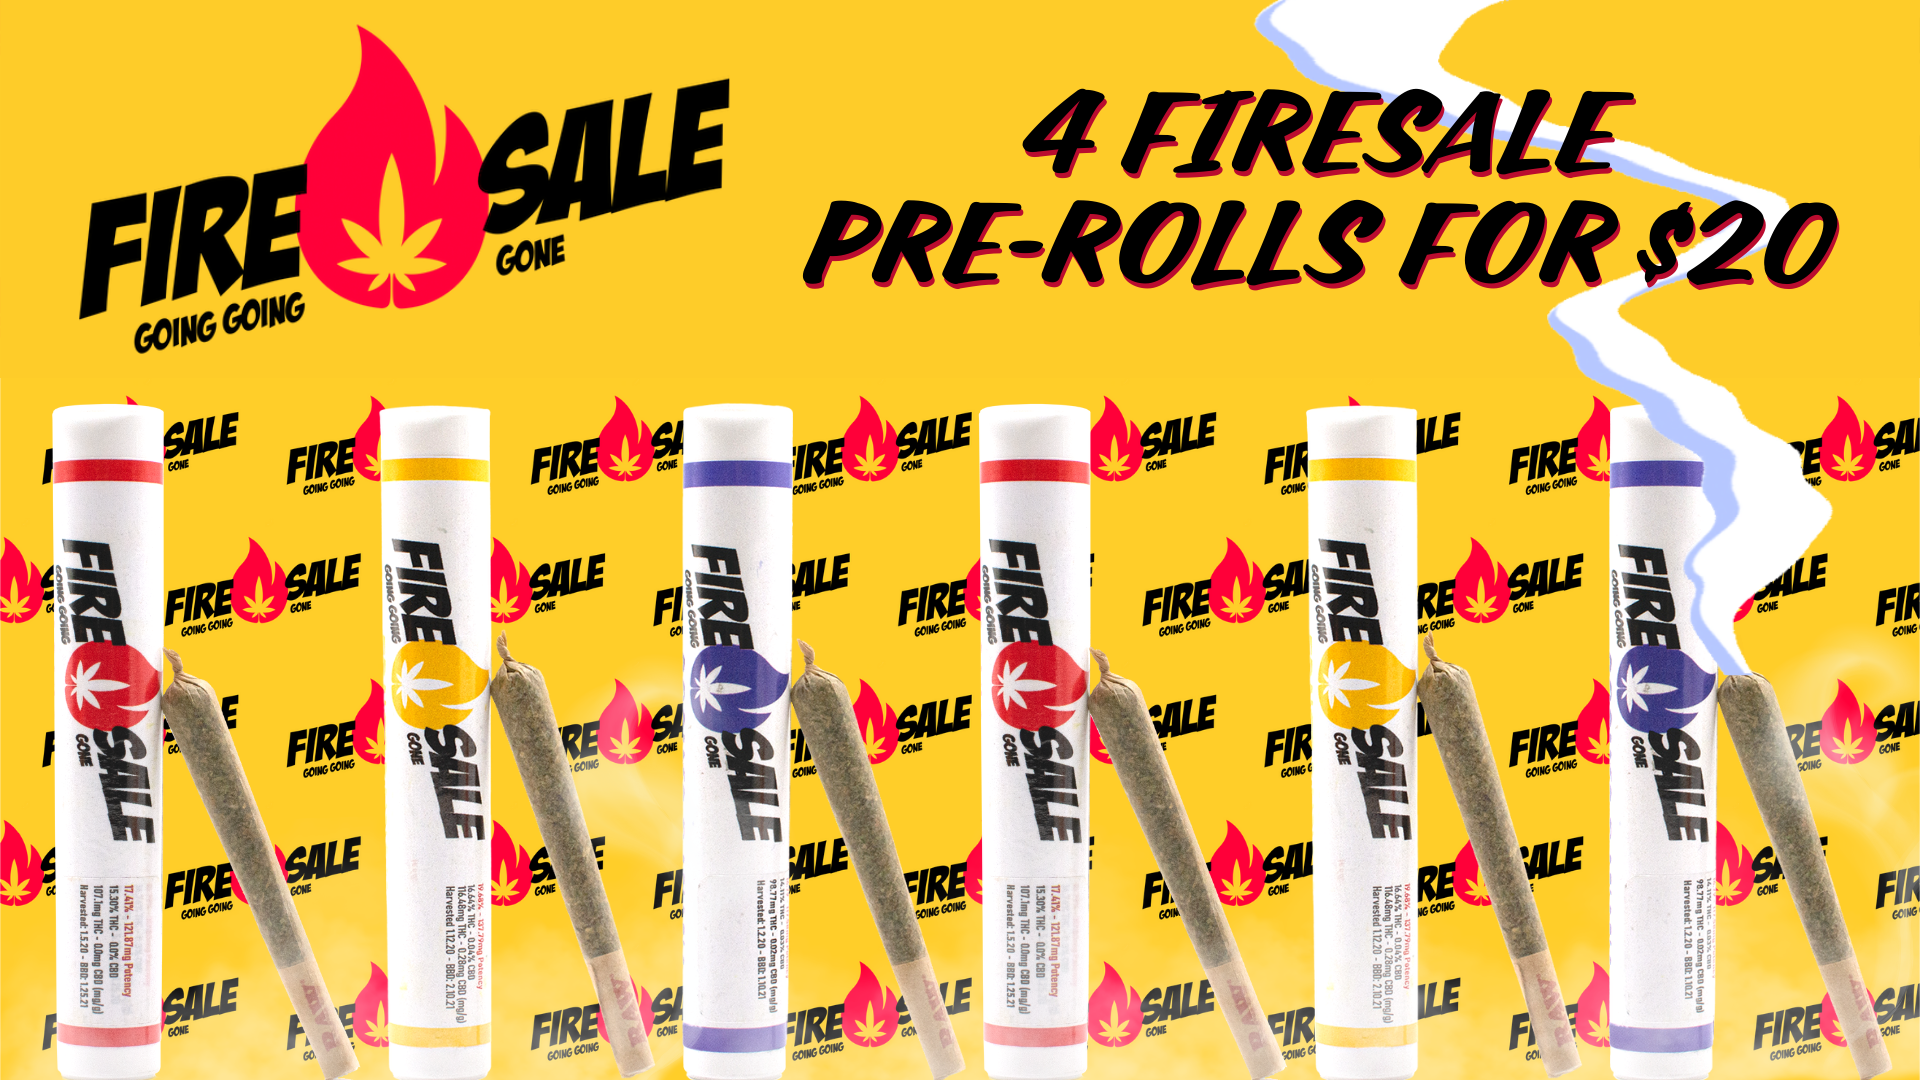 firesale 420 deal banner